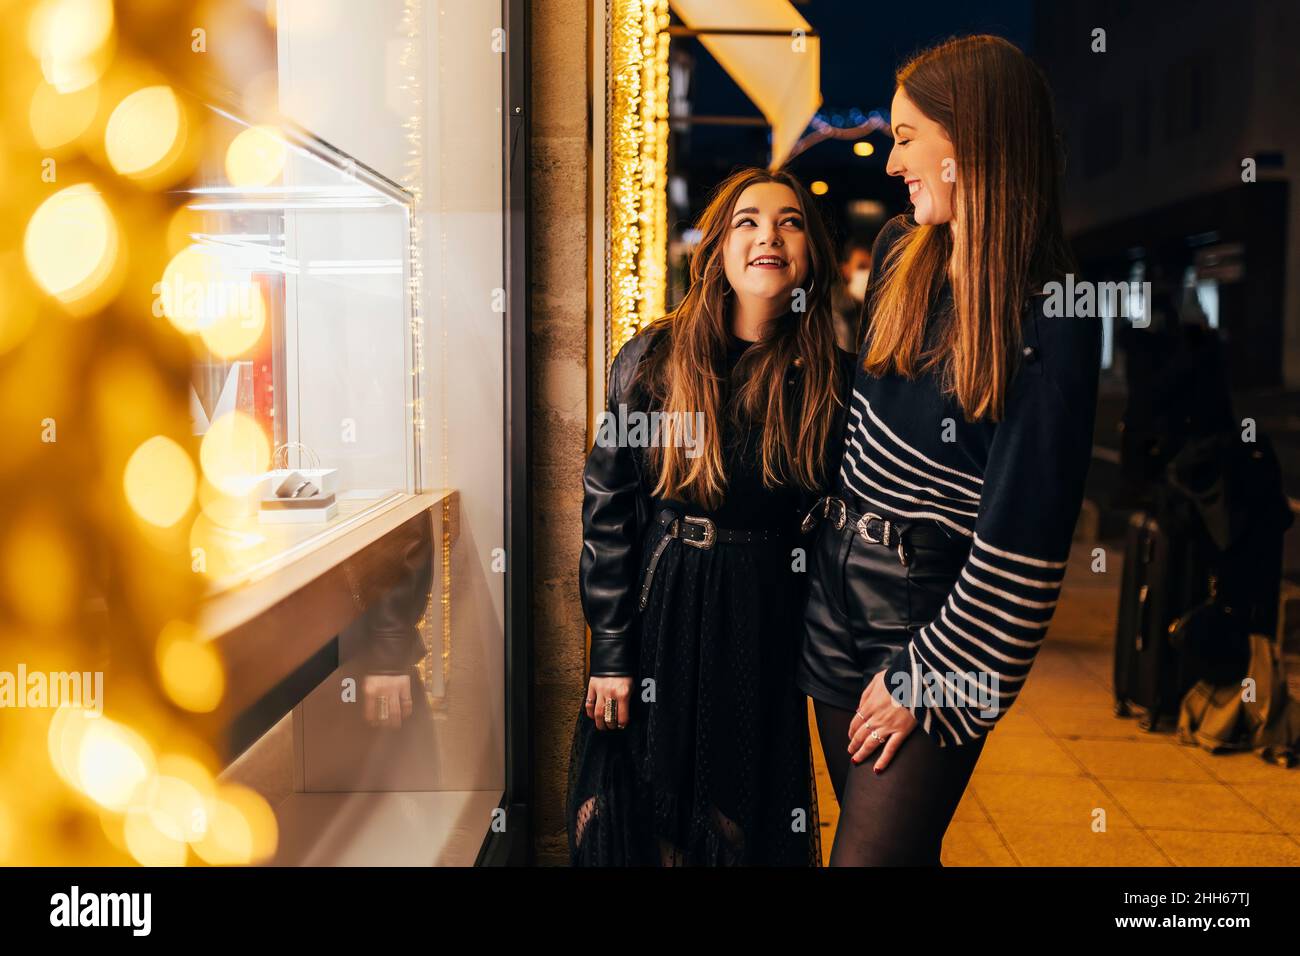 De jeunes amis souriants se tenant près de la fenêtre illuminée du magasin la nuit Banque D'Images